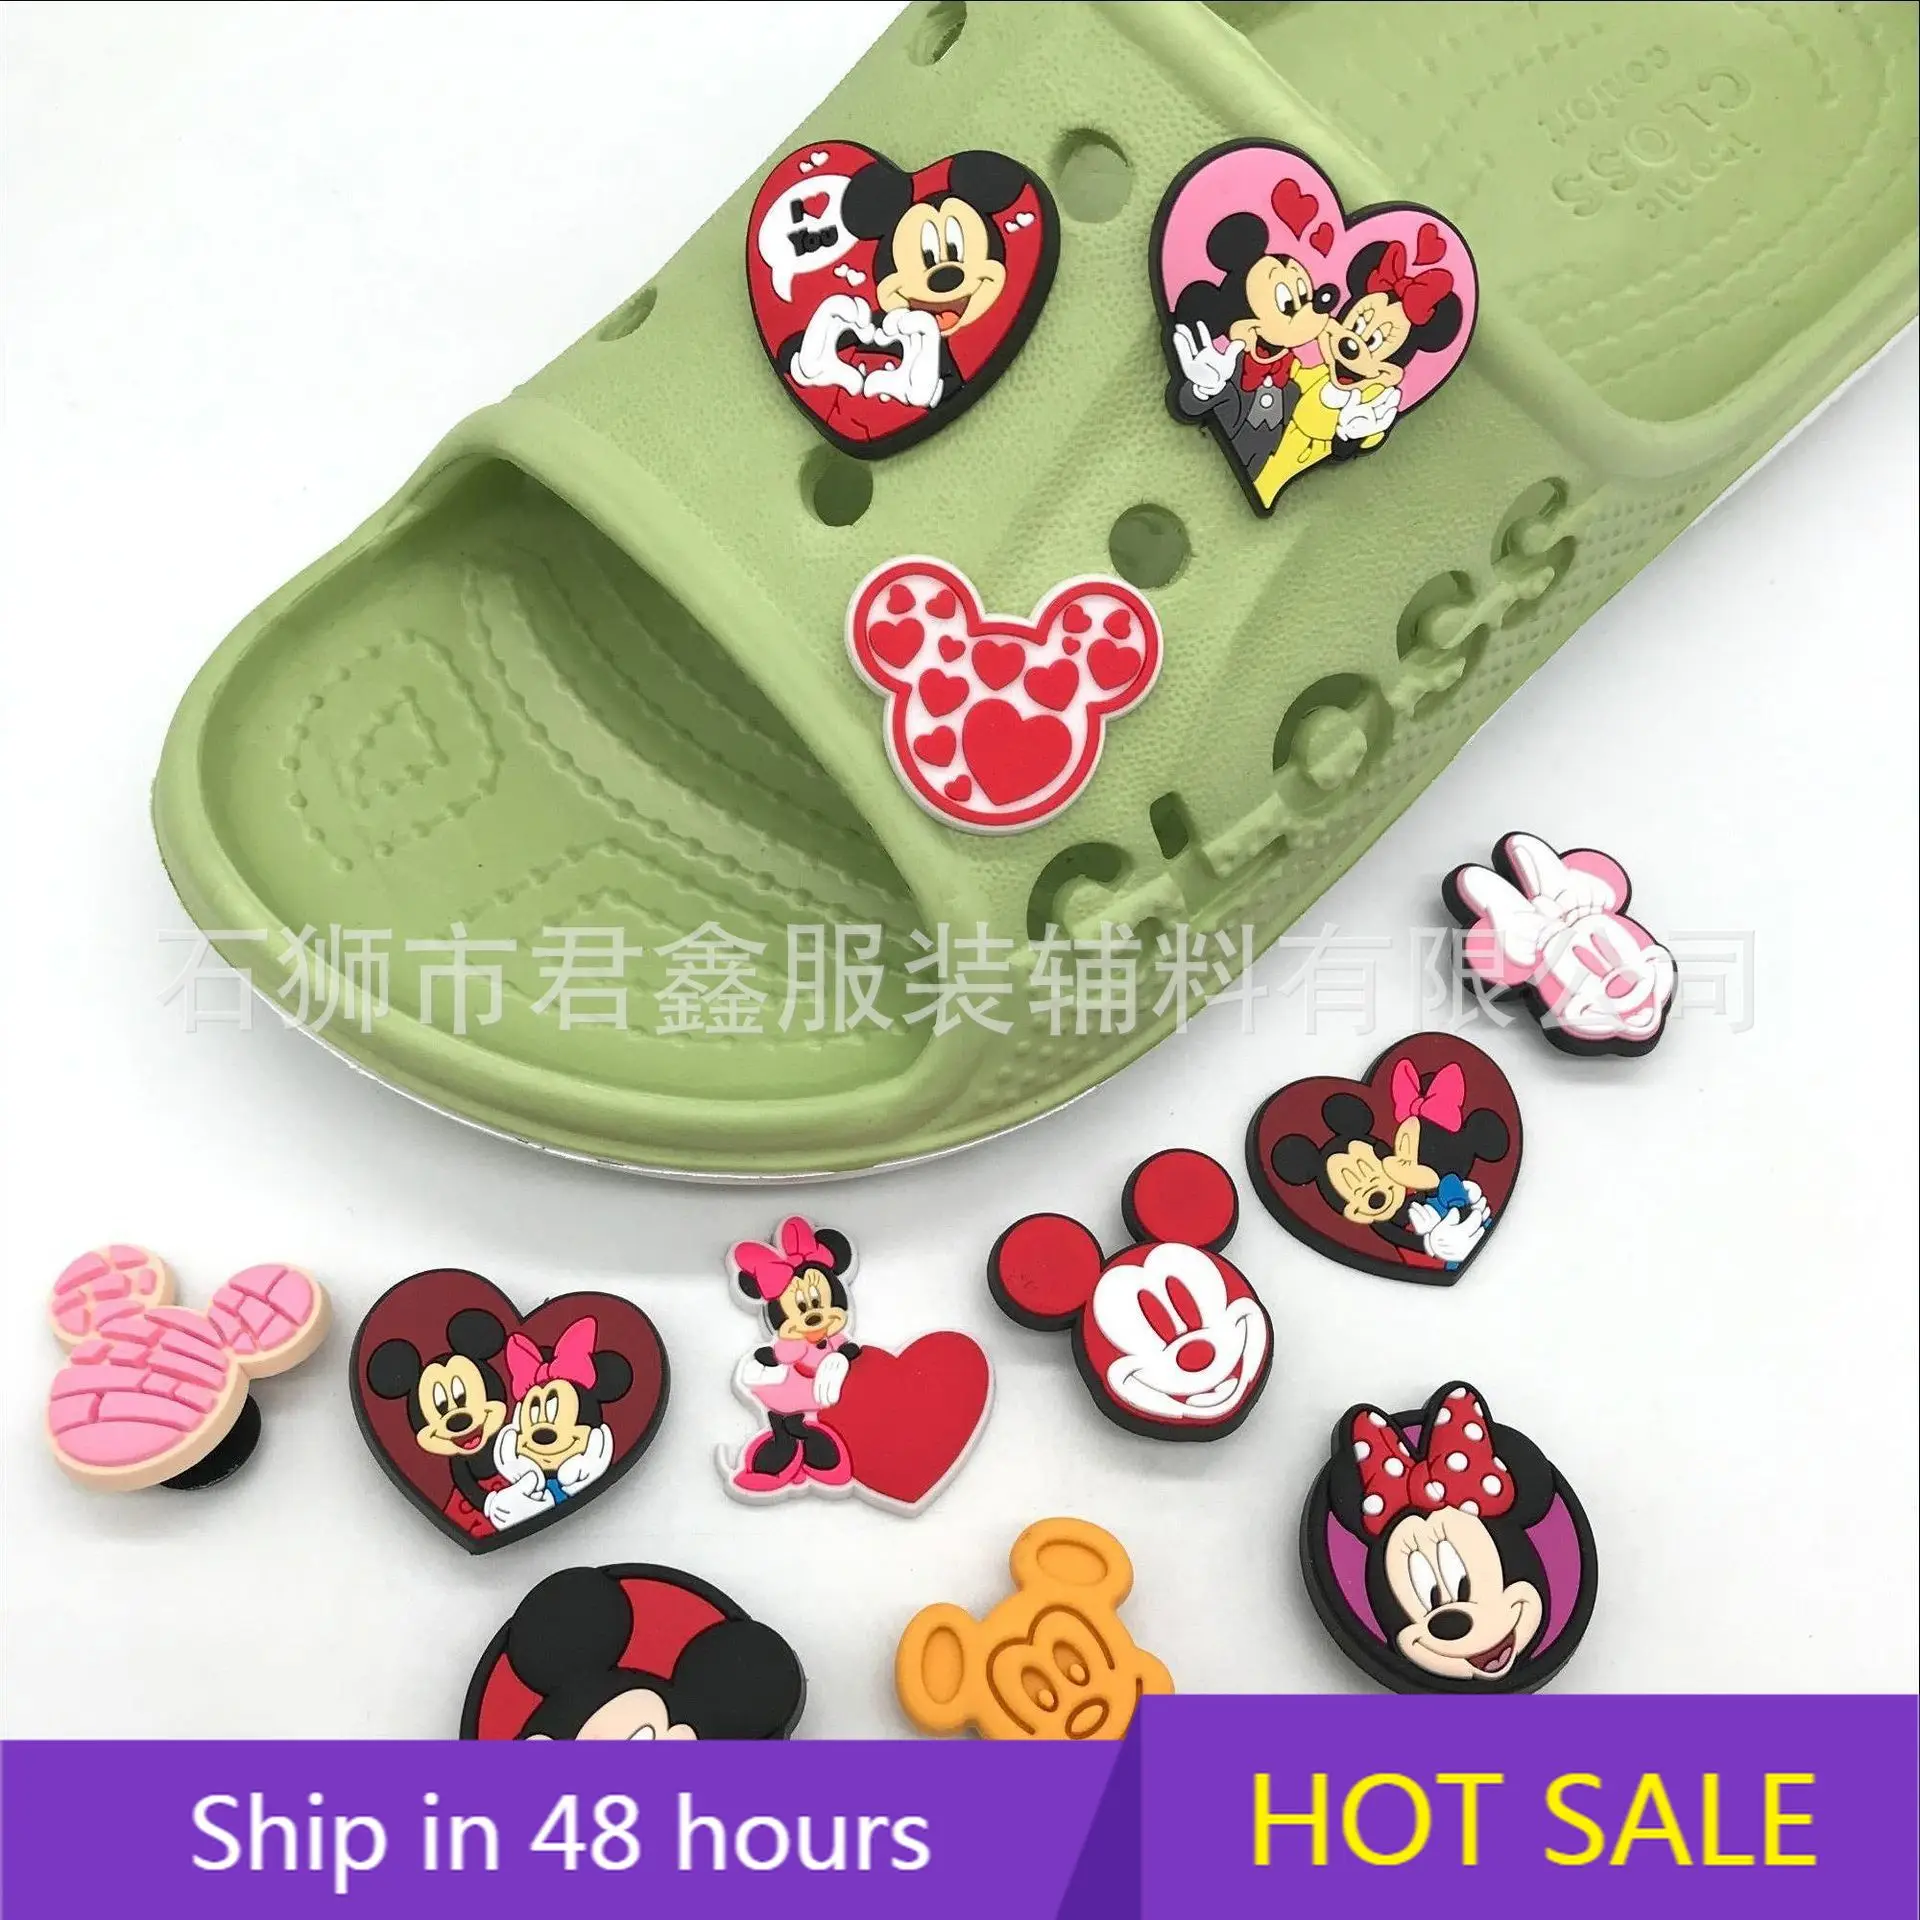 Disney Croc Jibbitz - Minnie Mouse